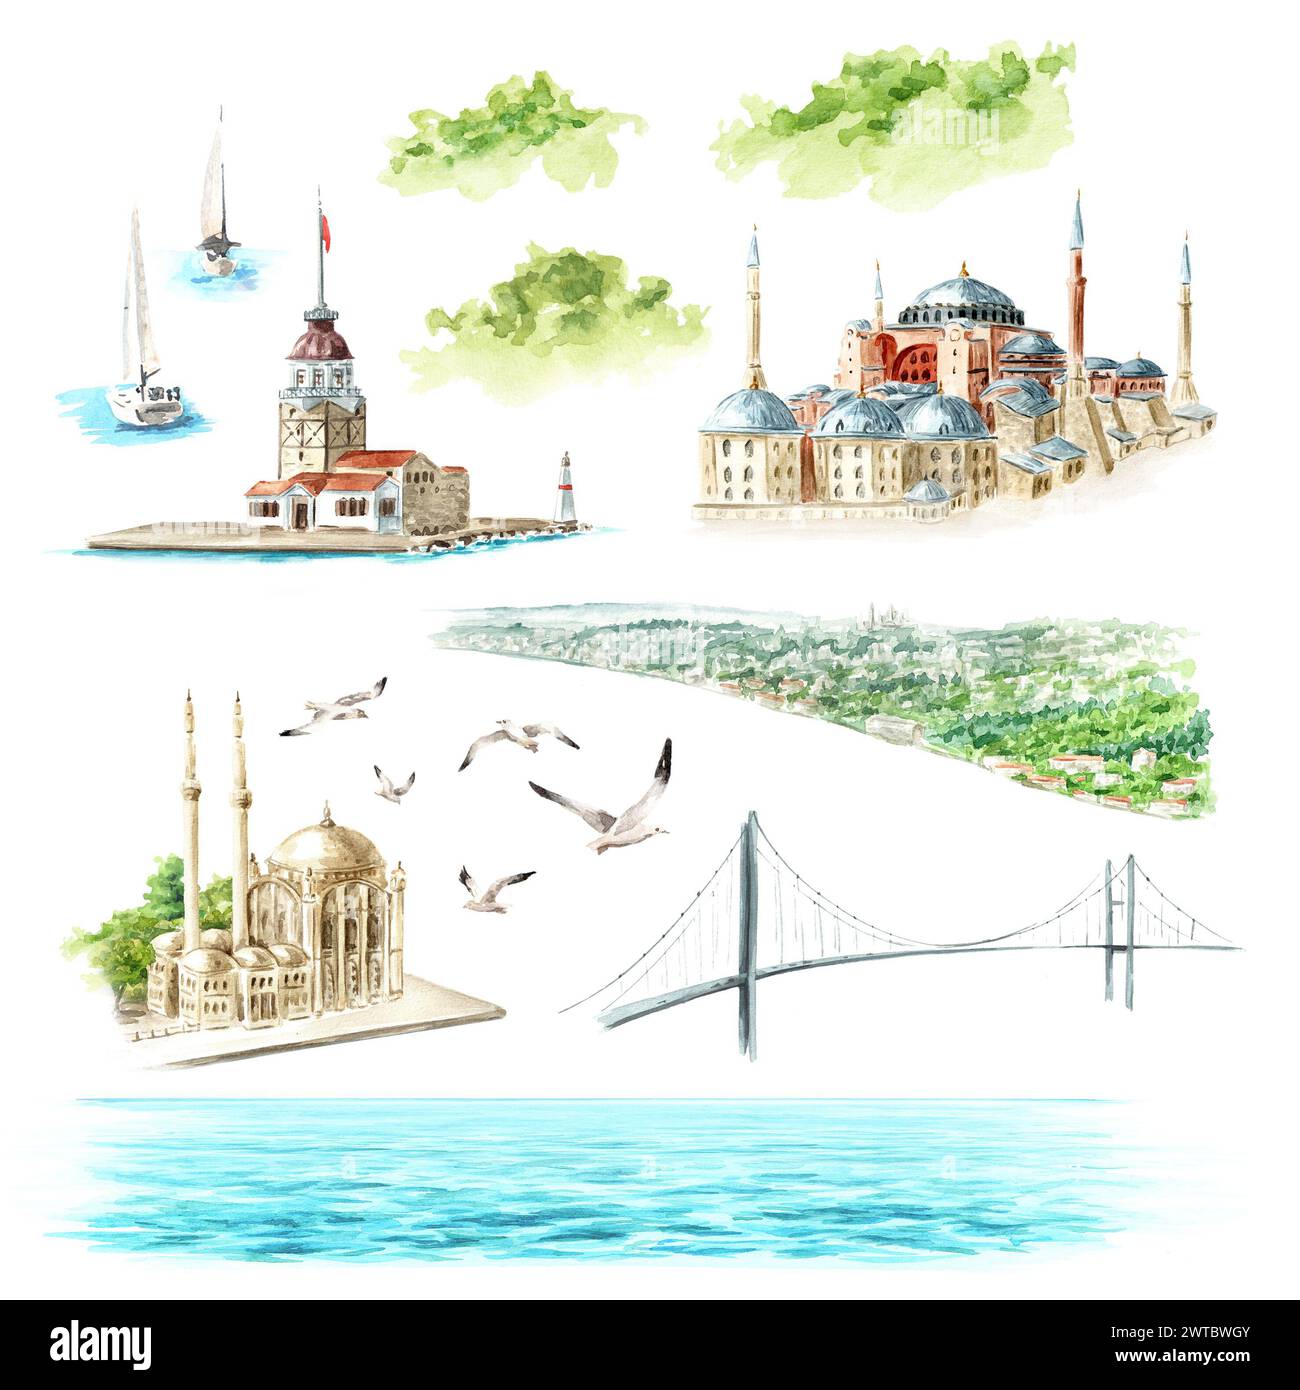 Stretto del Bosforo, elementi di architettura, Istanbul, Turchia. Illustrazione ad acquerello disegnata a mano, isolata su sfondo bianco Foto Stock